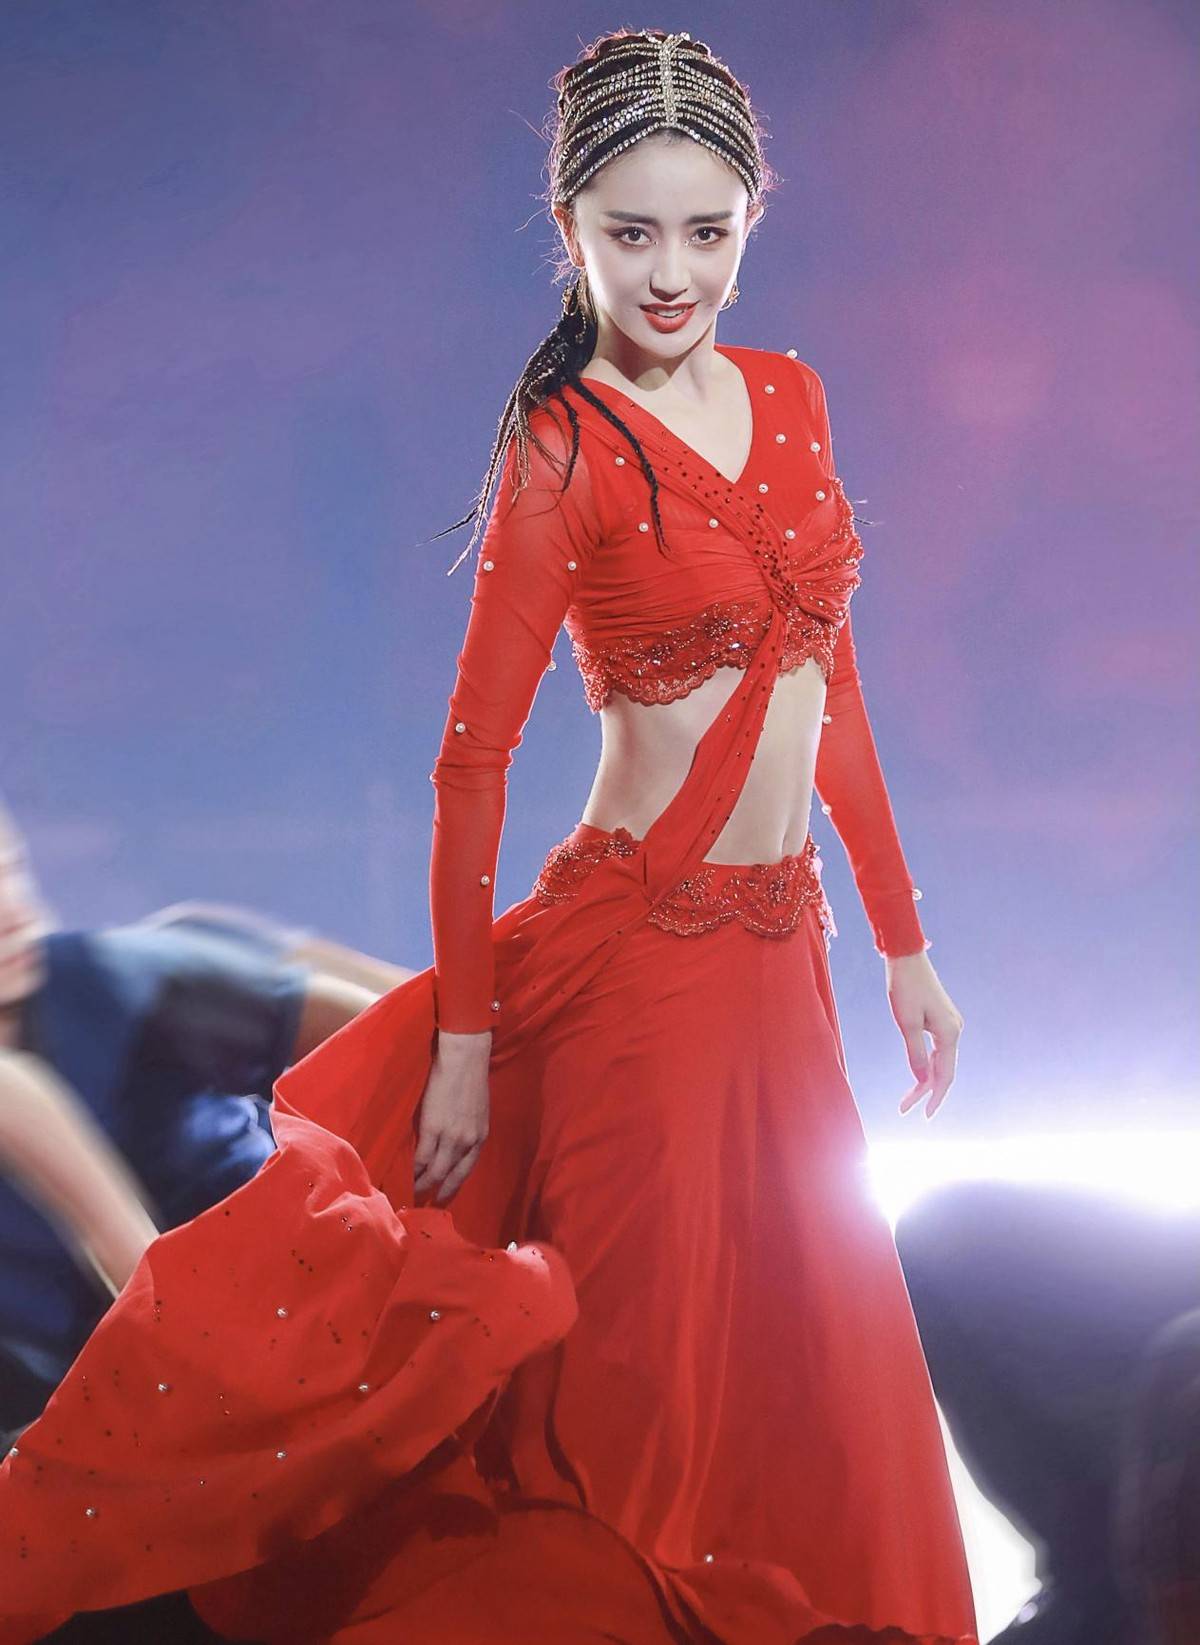 38岁佟丽娅跳舞魅力四射,穿露脐装秀小蛮腰,一袭红裙风情万种